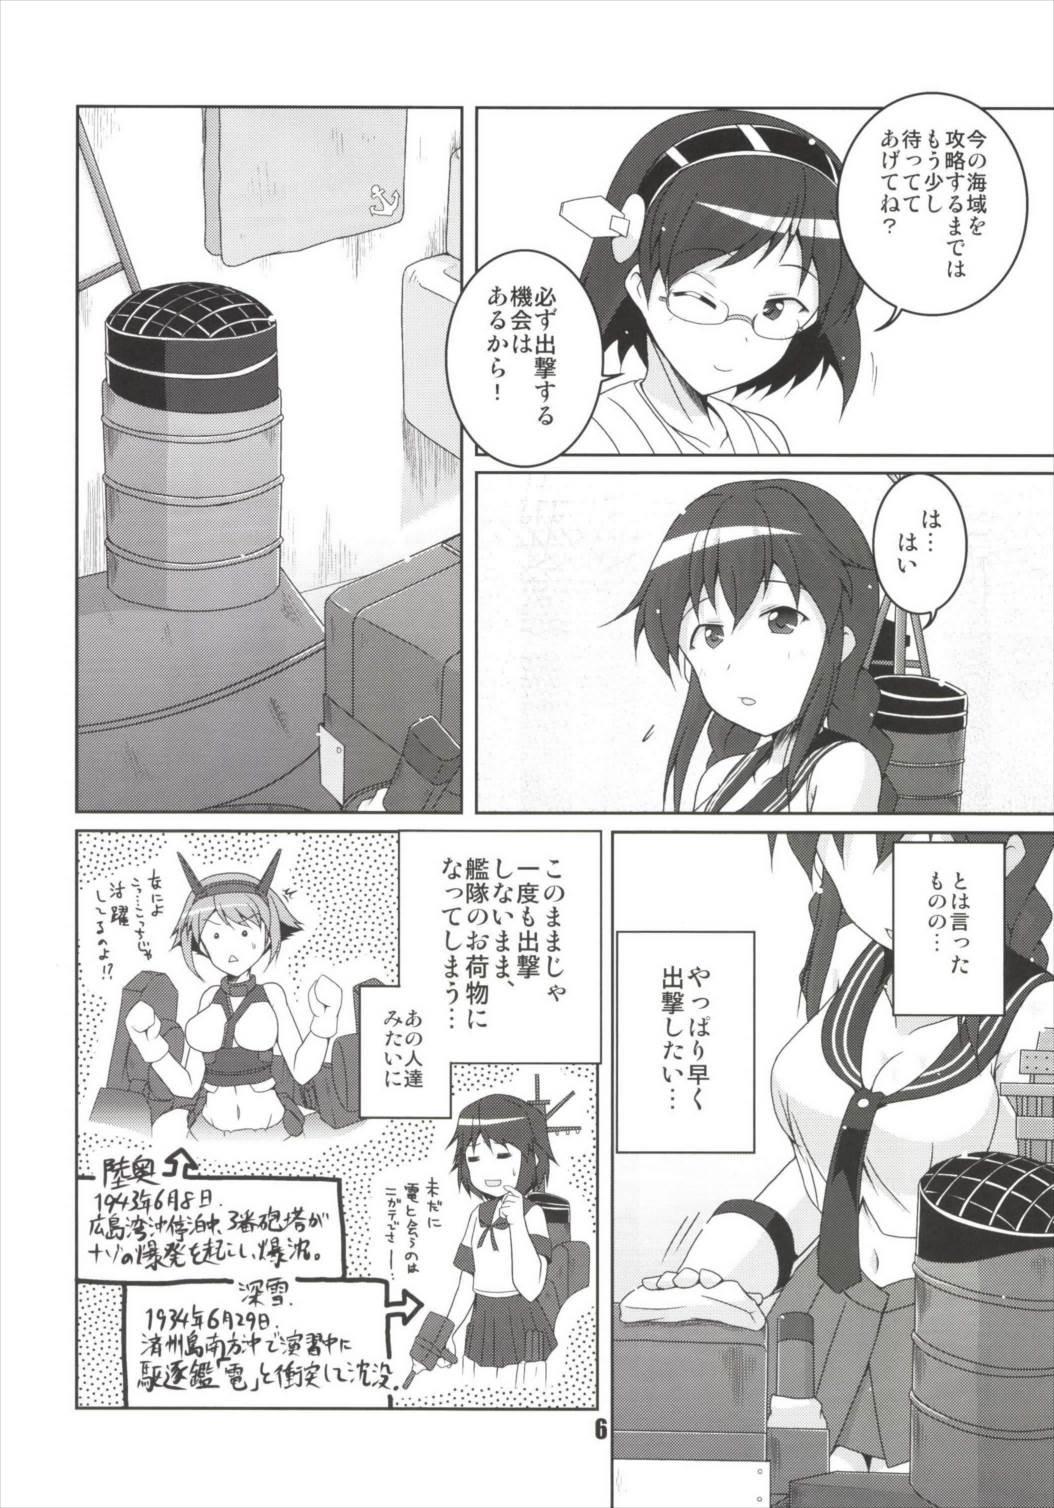 Friend Noshiro no Deban wa Mada desu ka? - Kantai collection Ameture Porn - Page 6